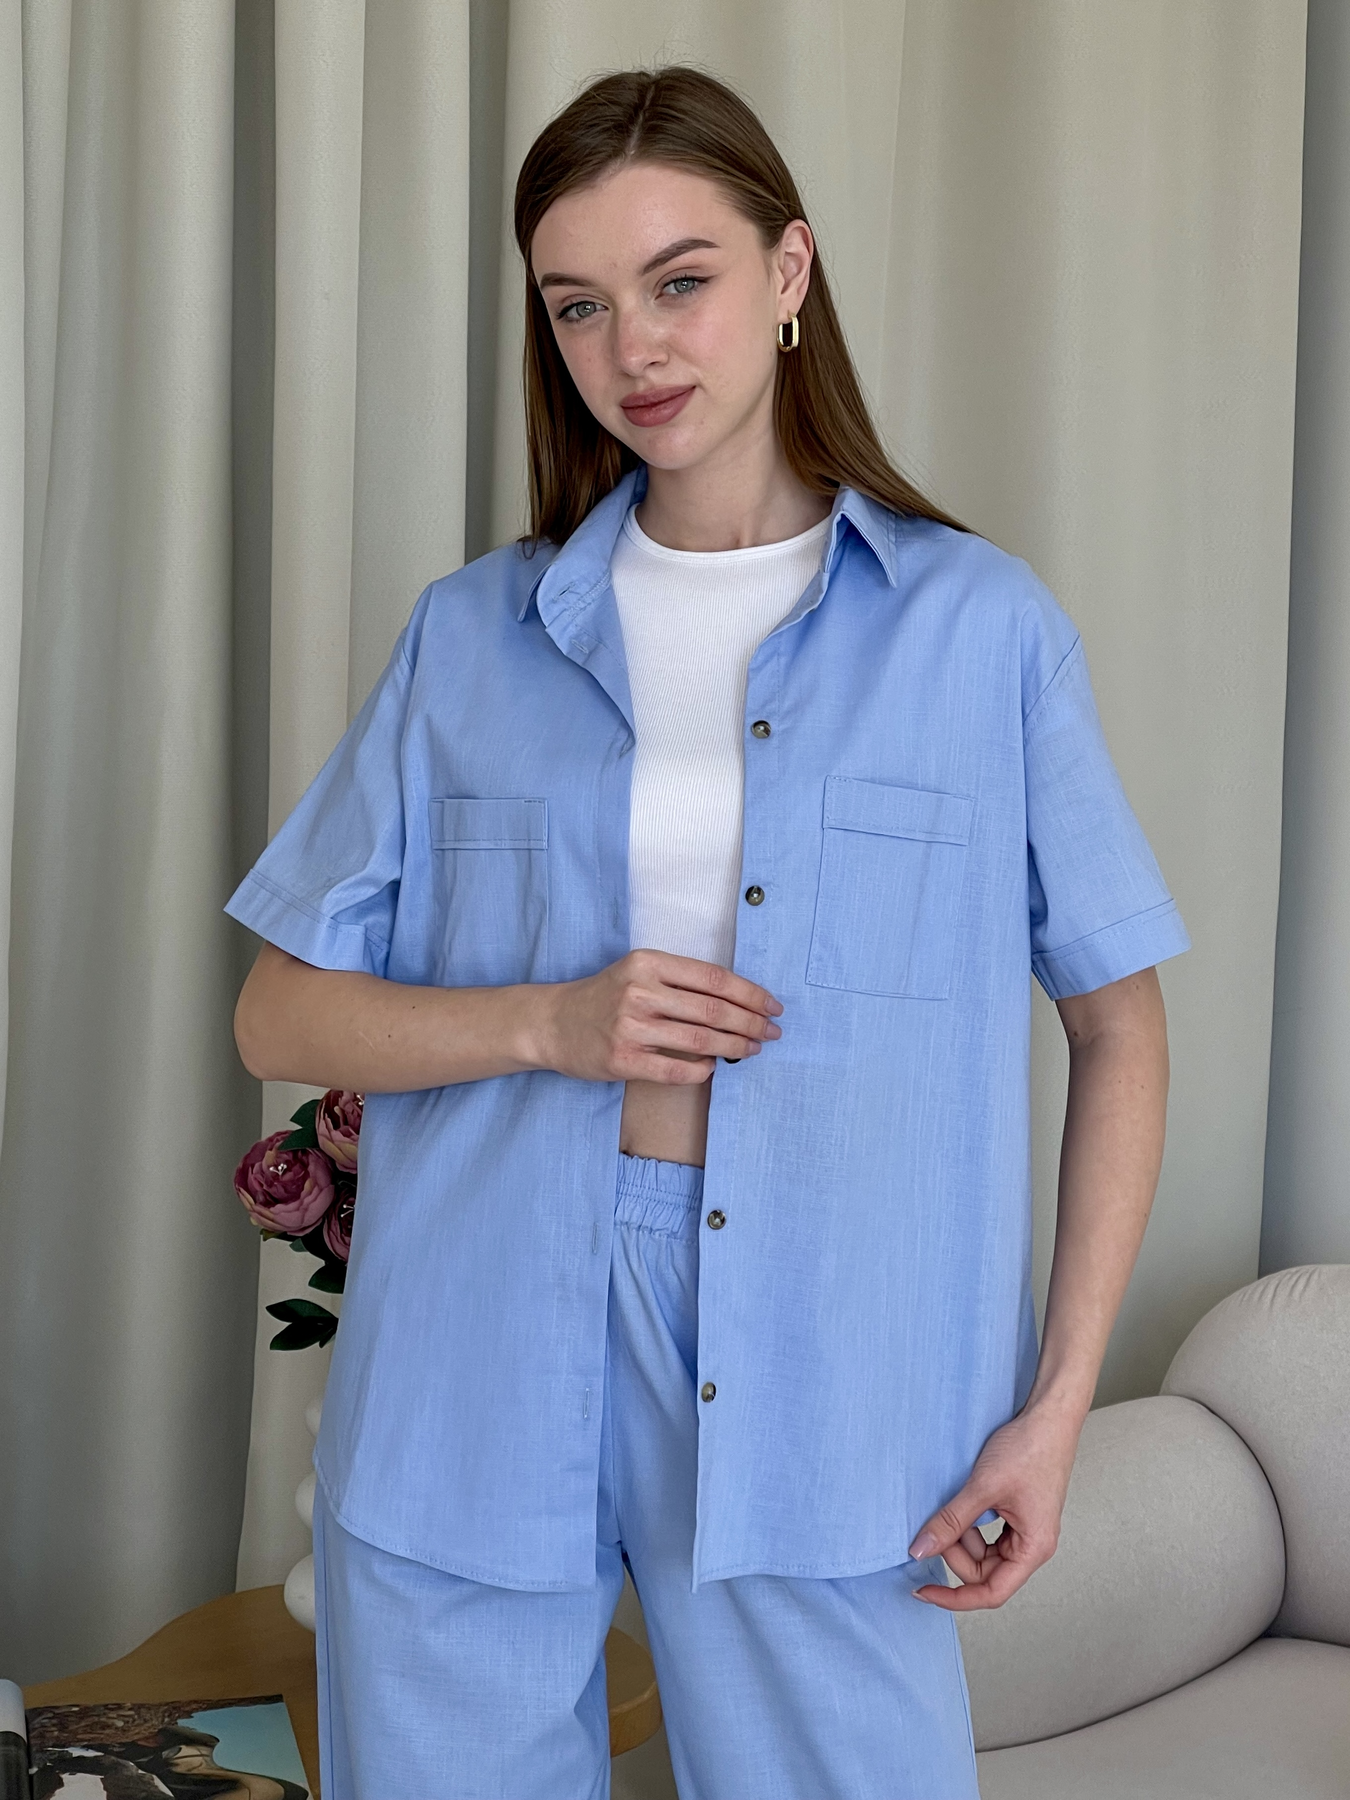 Купить Льняная рубашка с коротким рукавом голубая Merlini Нино 200001207 размер 42-44 (S-M) в интернет-магазине